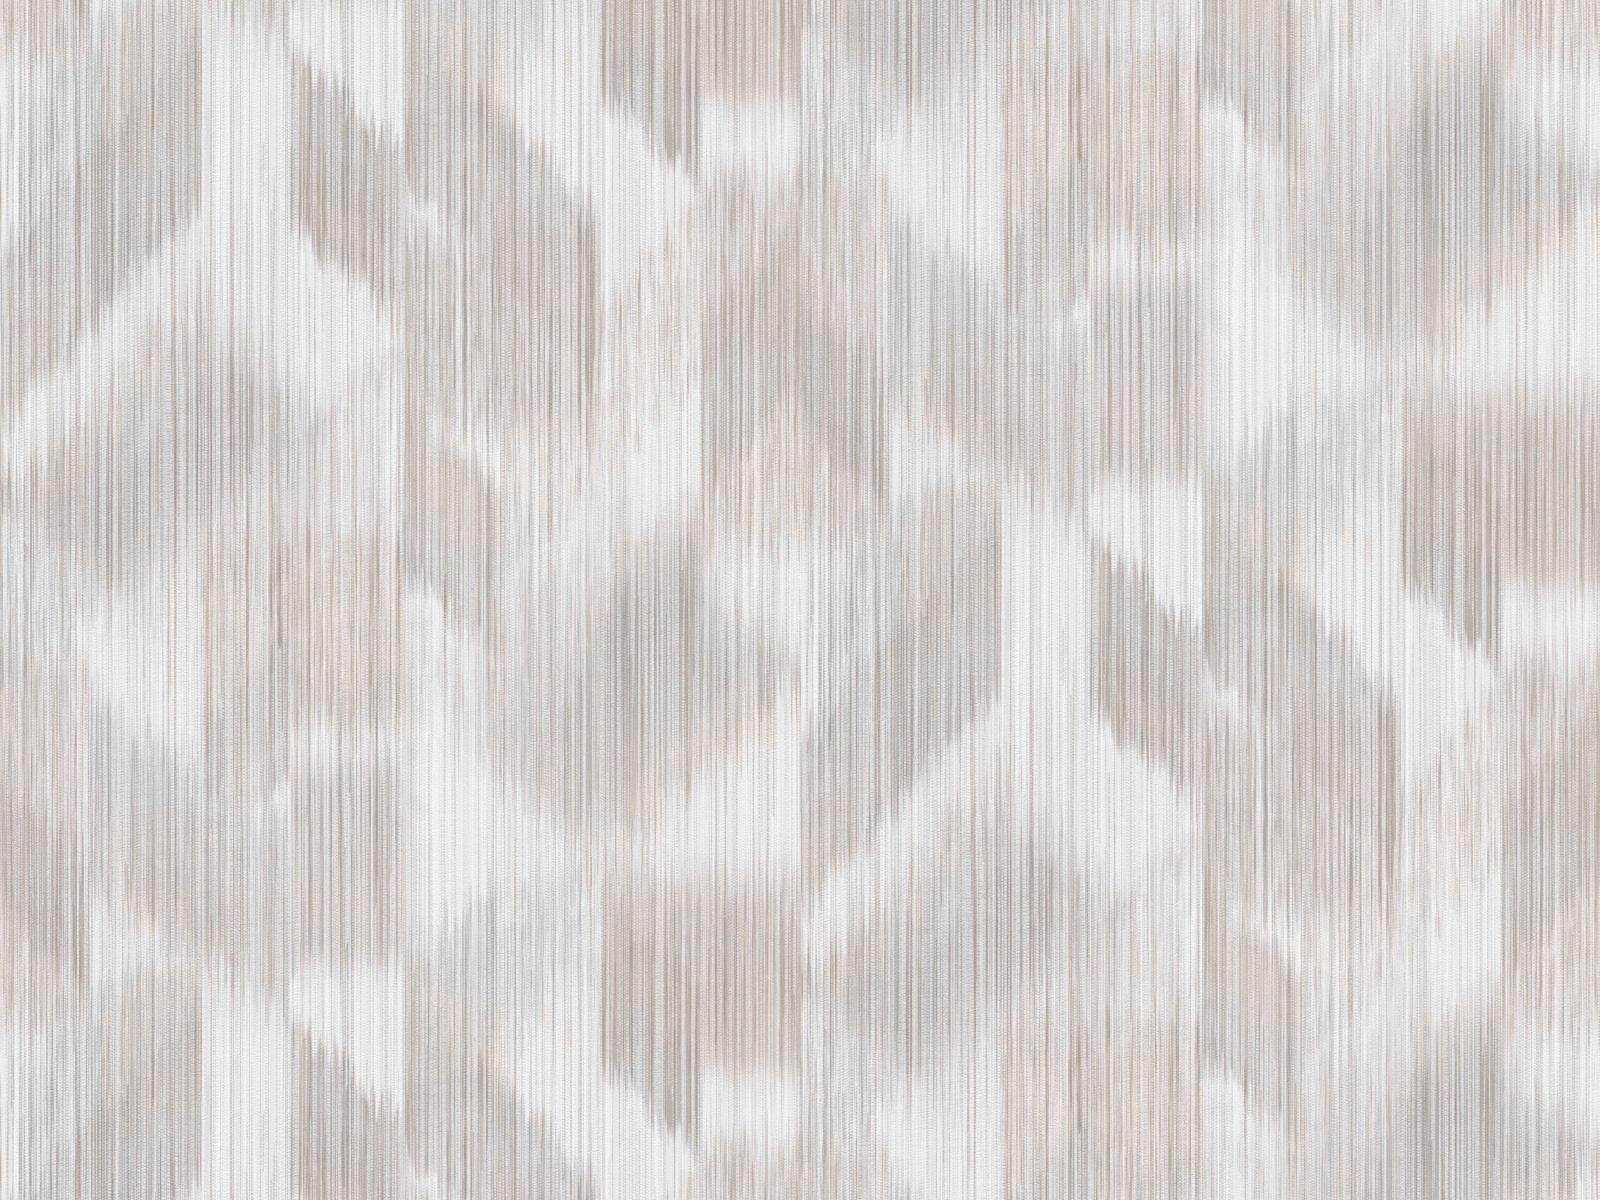 Vliesová tapeta s relaxačným vzorom tón v tóne v hnedých farbách, ER-601585